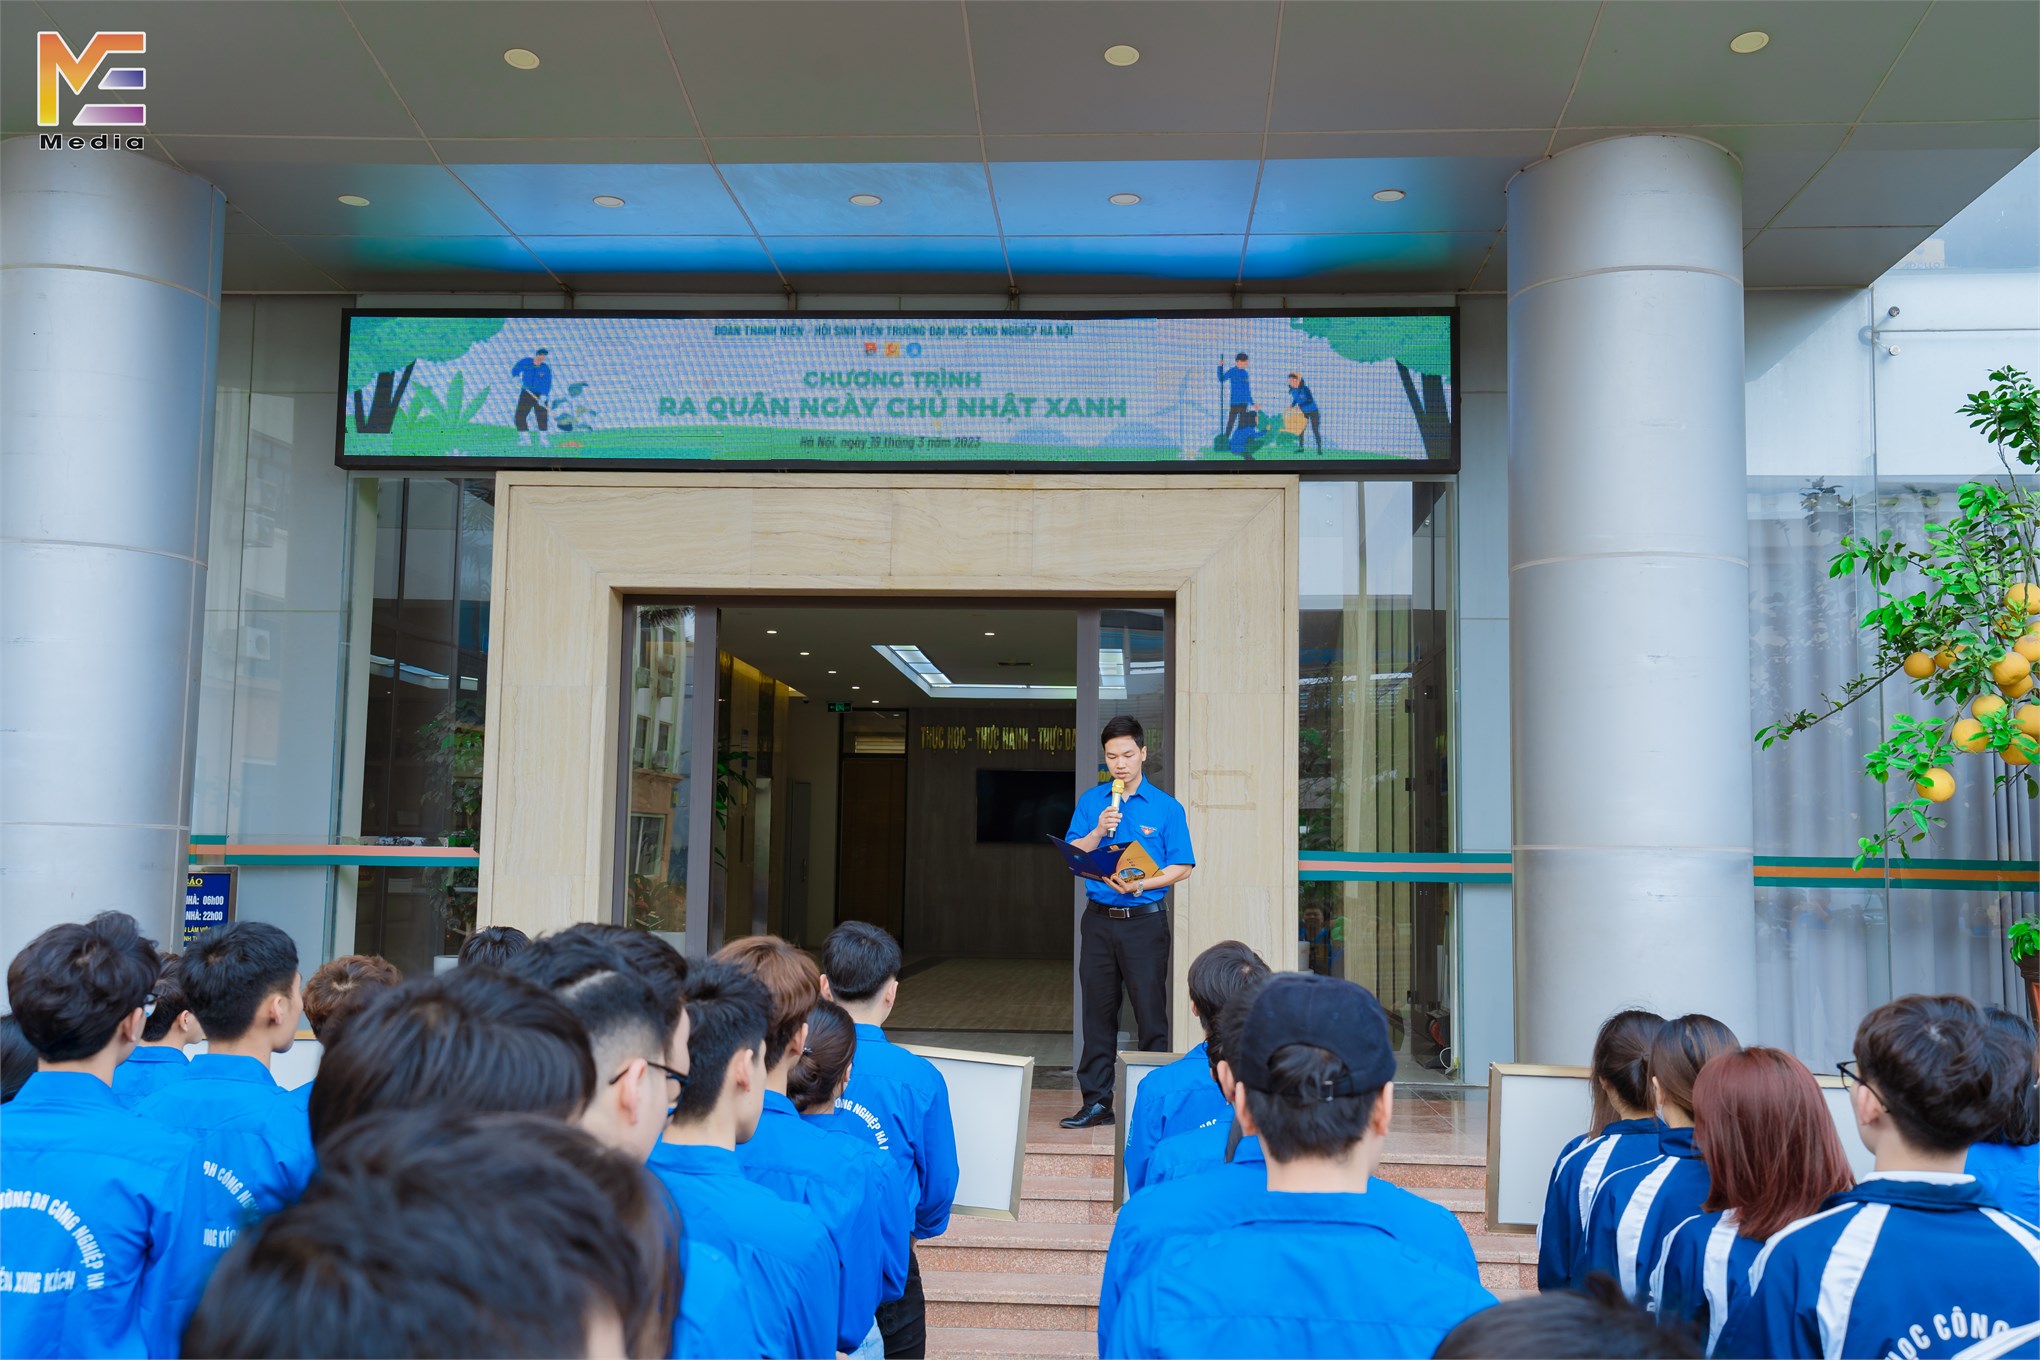 Tuổi trẻ Đại học Công nghiệp Hà Nội sôi nổi các hoạt động chào mừng Tháng Thanh niên 2023